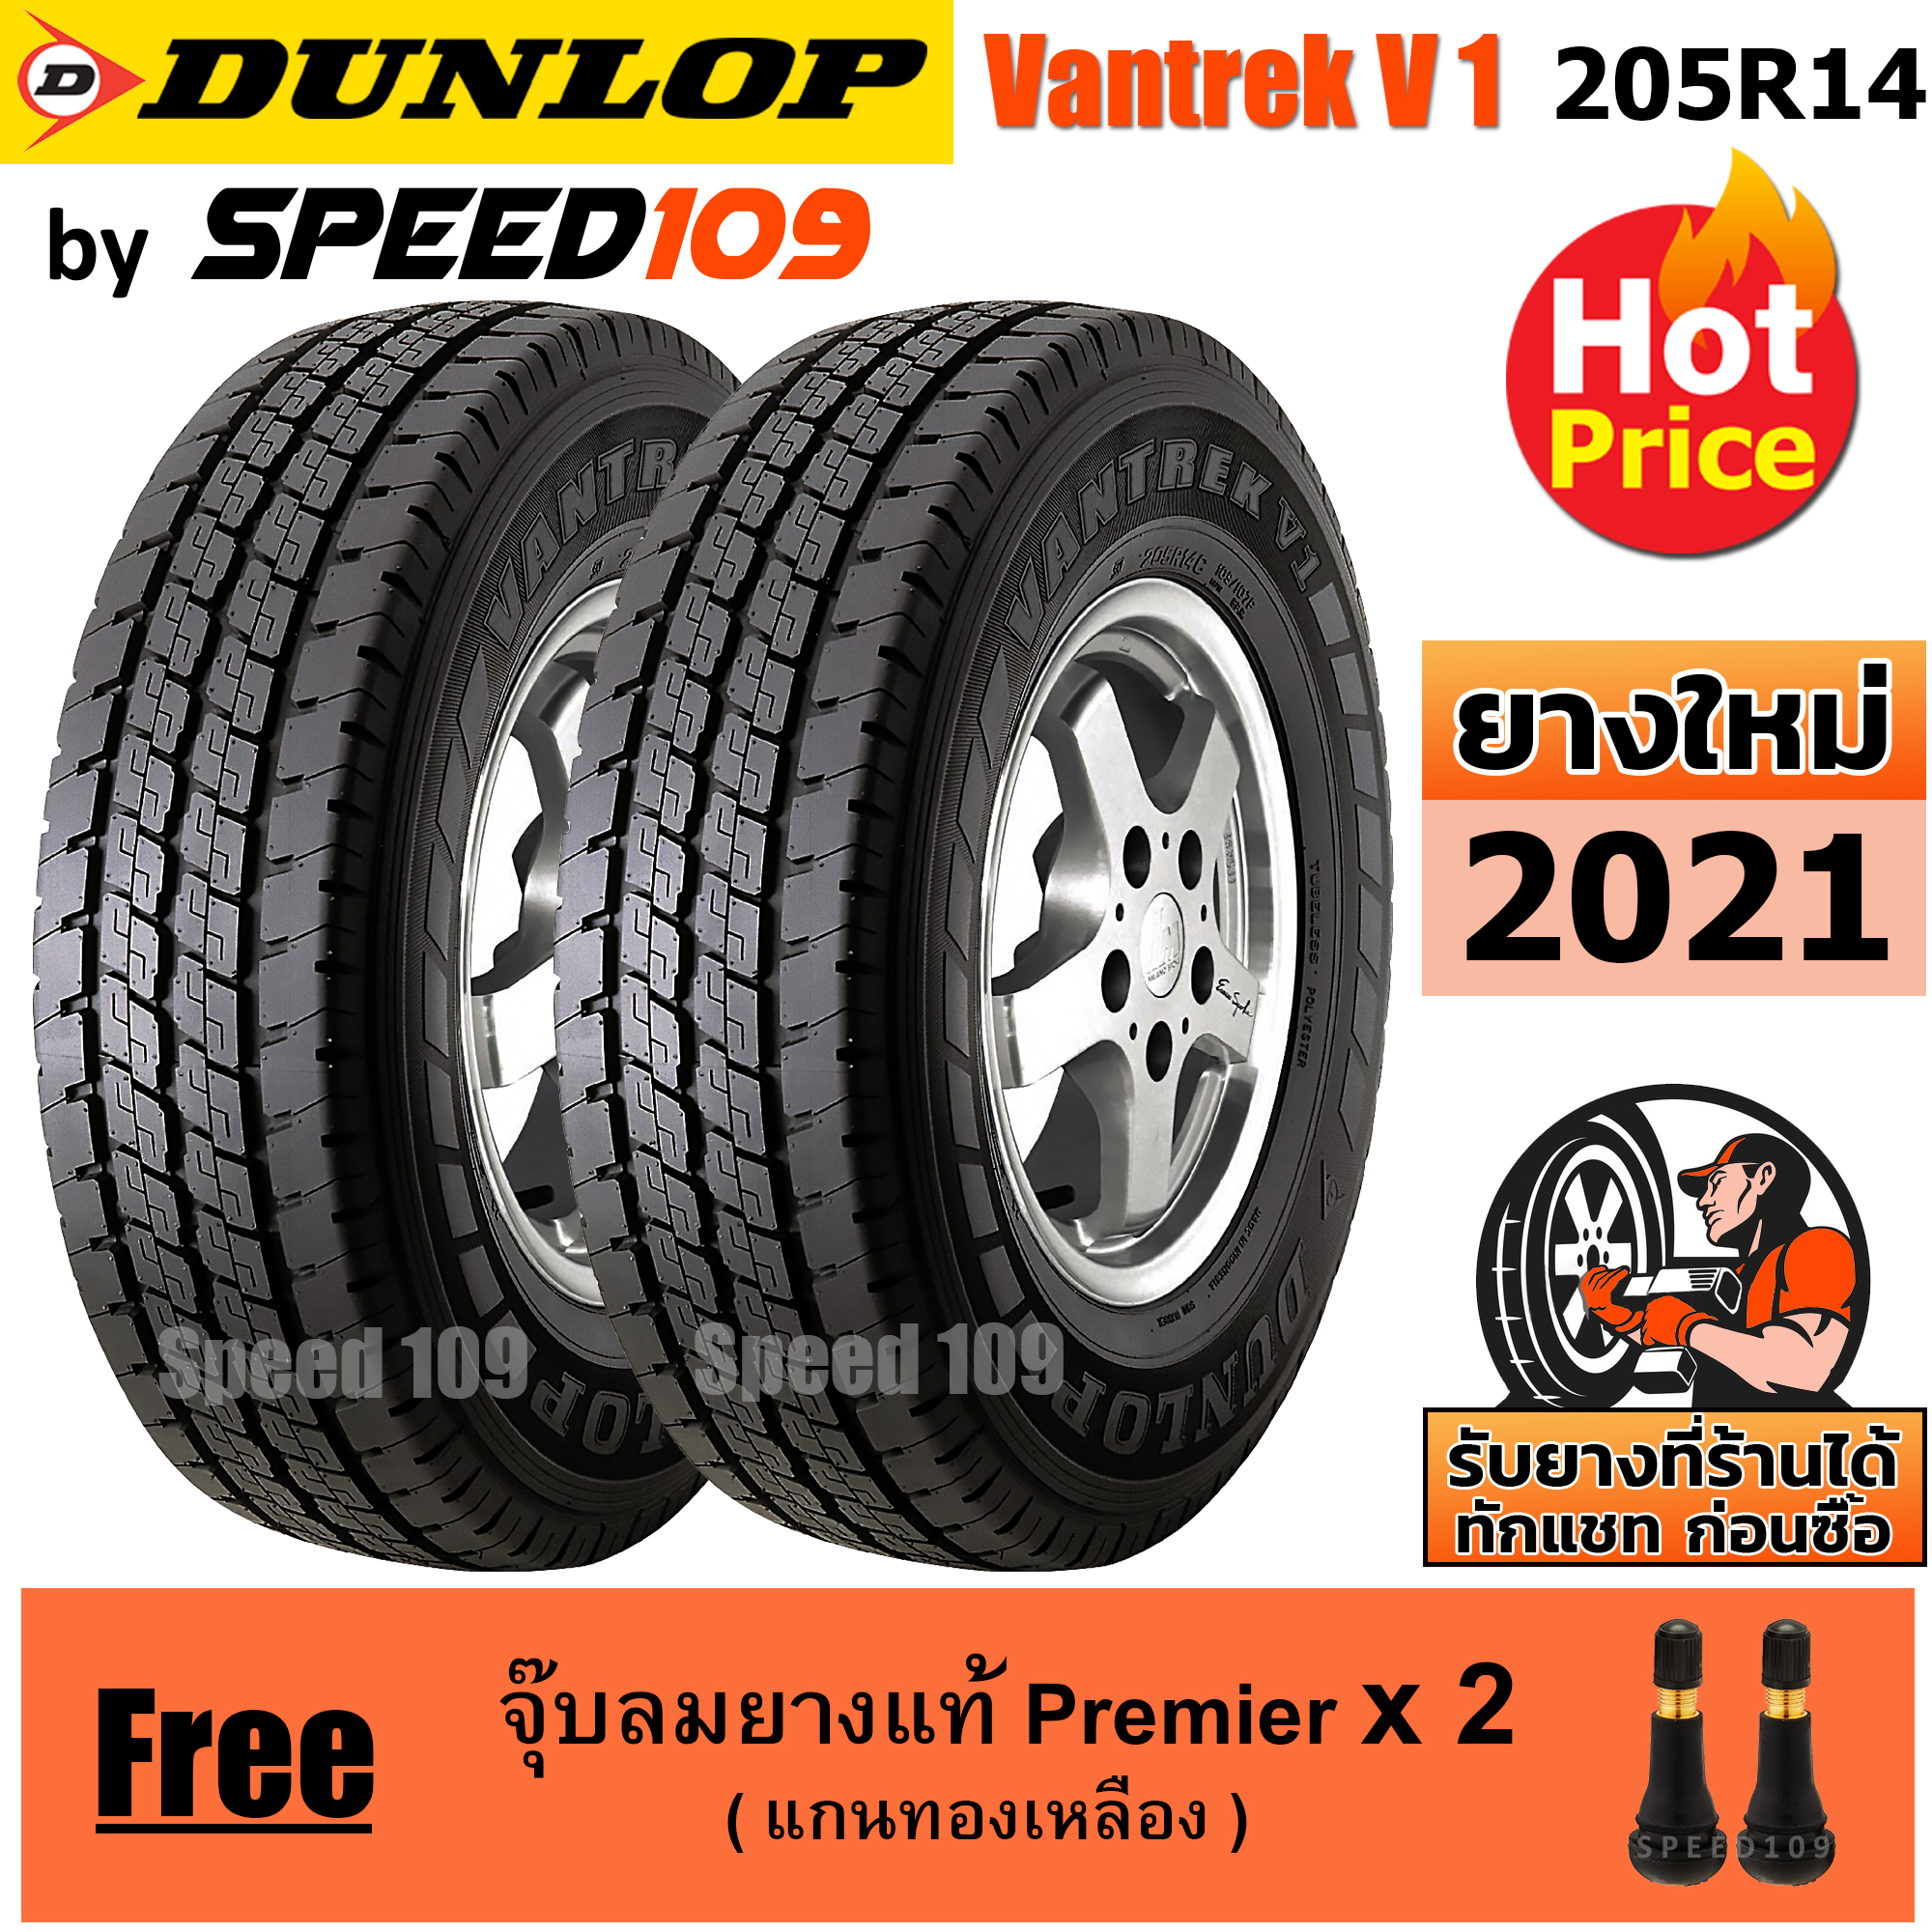 DUNLOP ยางรถยนต์ ขอบ 14 ขนาด 205R14 รุ่น Vantrek V1 - 2 เส้น (ปี 2021)